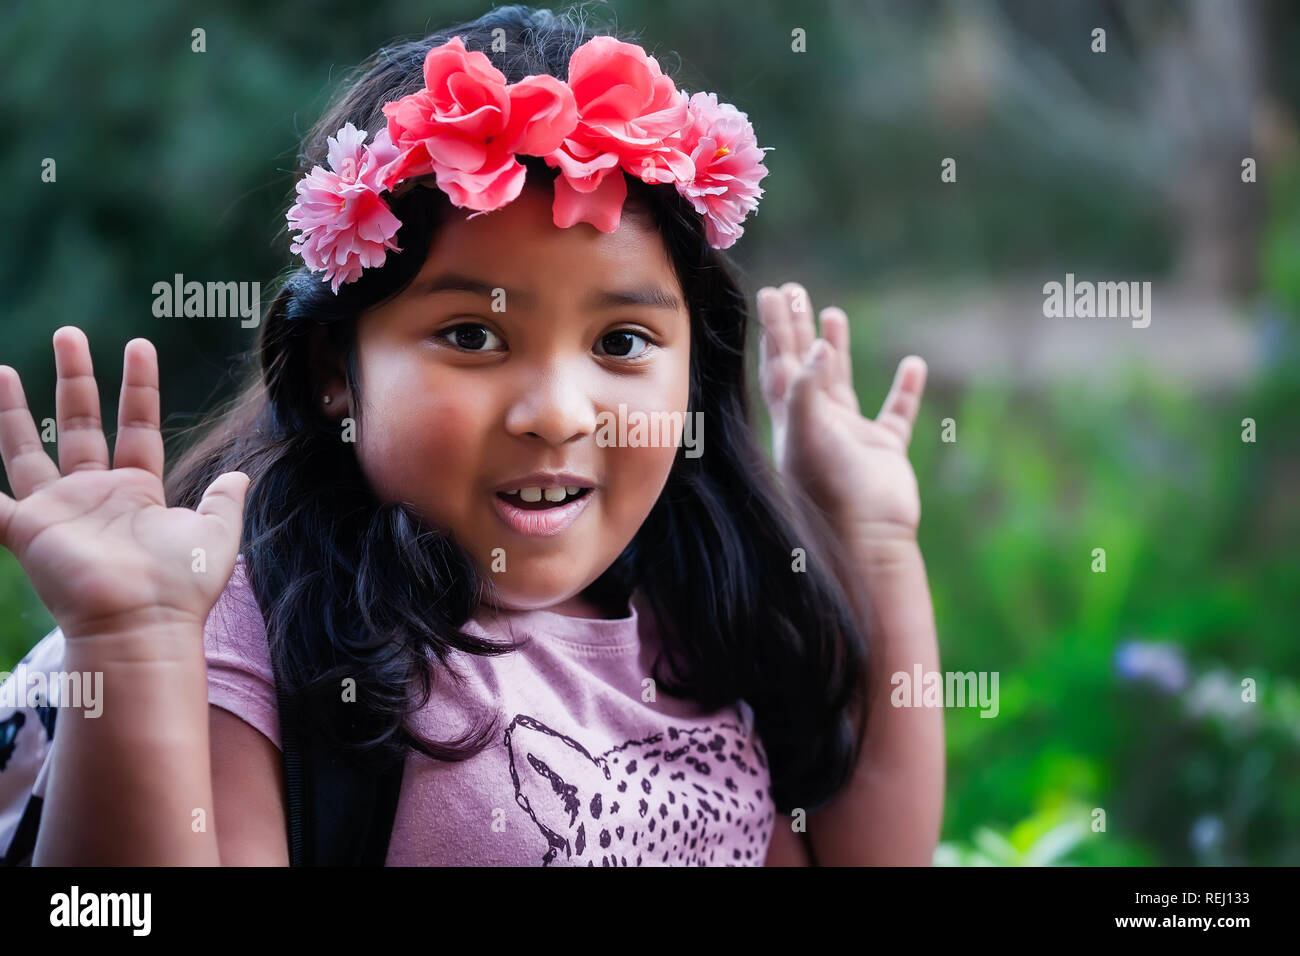 Un bel giovane nativo cerca ragazza indossando uno zaino e floreali come la fascia di testa con le mani in aria, esprimere un emozione di sorpresa. Foto Stock